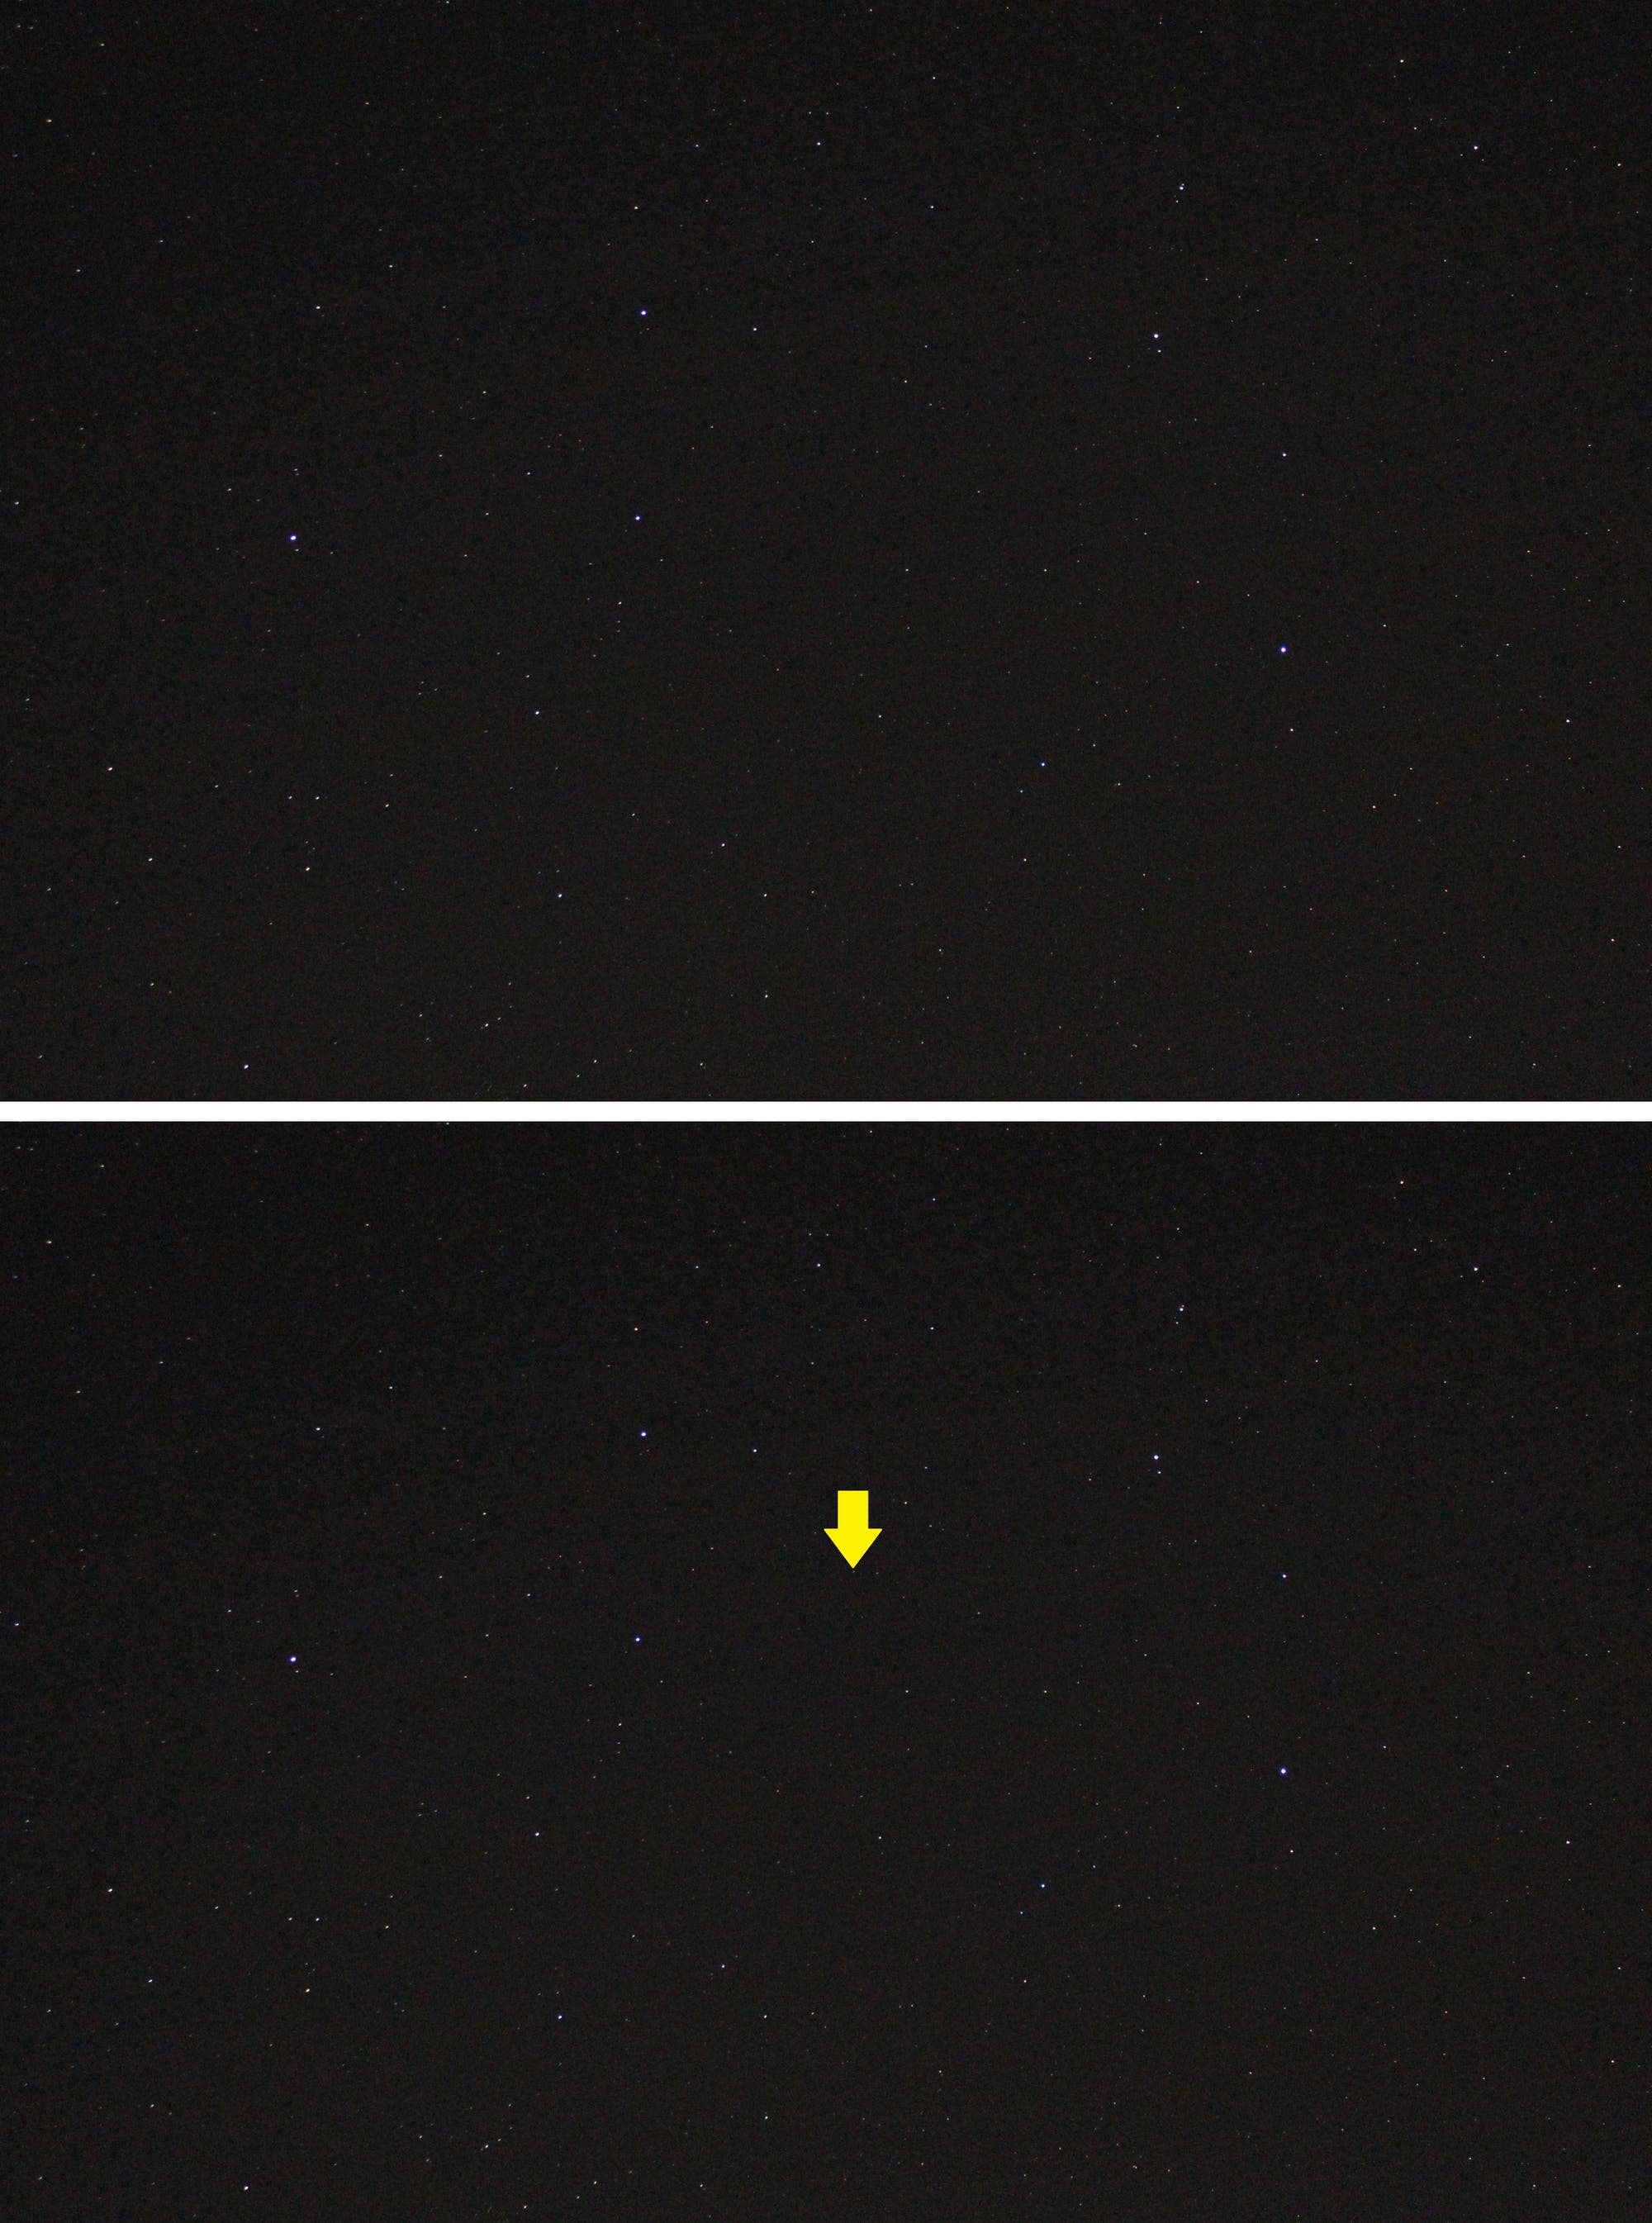 Kleinplanet Vesta im Sternbild Löwe